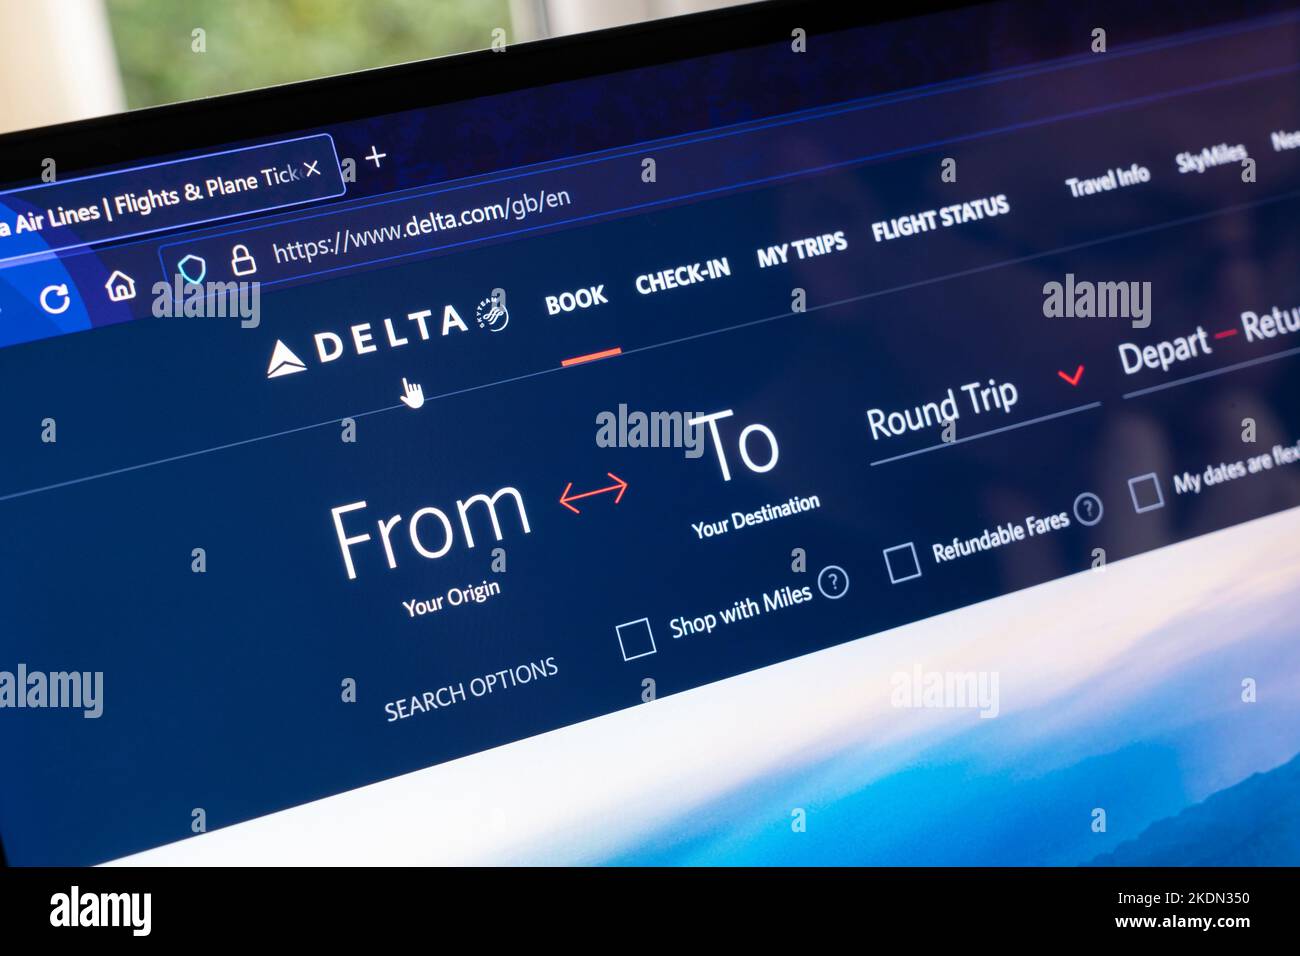 Website-Buchungsseite für Delta Air Lines, Inc., in der Regel als Delta bezeichnet, eine der größten Fluggesellschaften der Vereinigten Staaten und eine ältere Fluggesellschaft Stockfoto